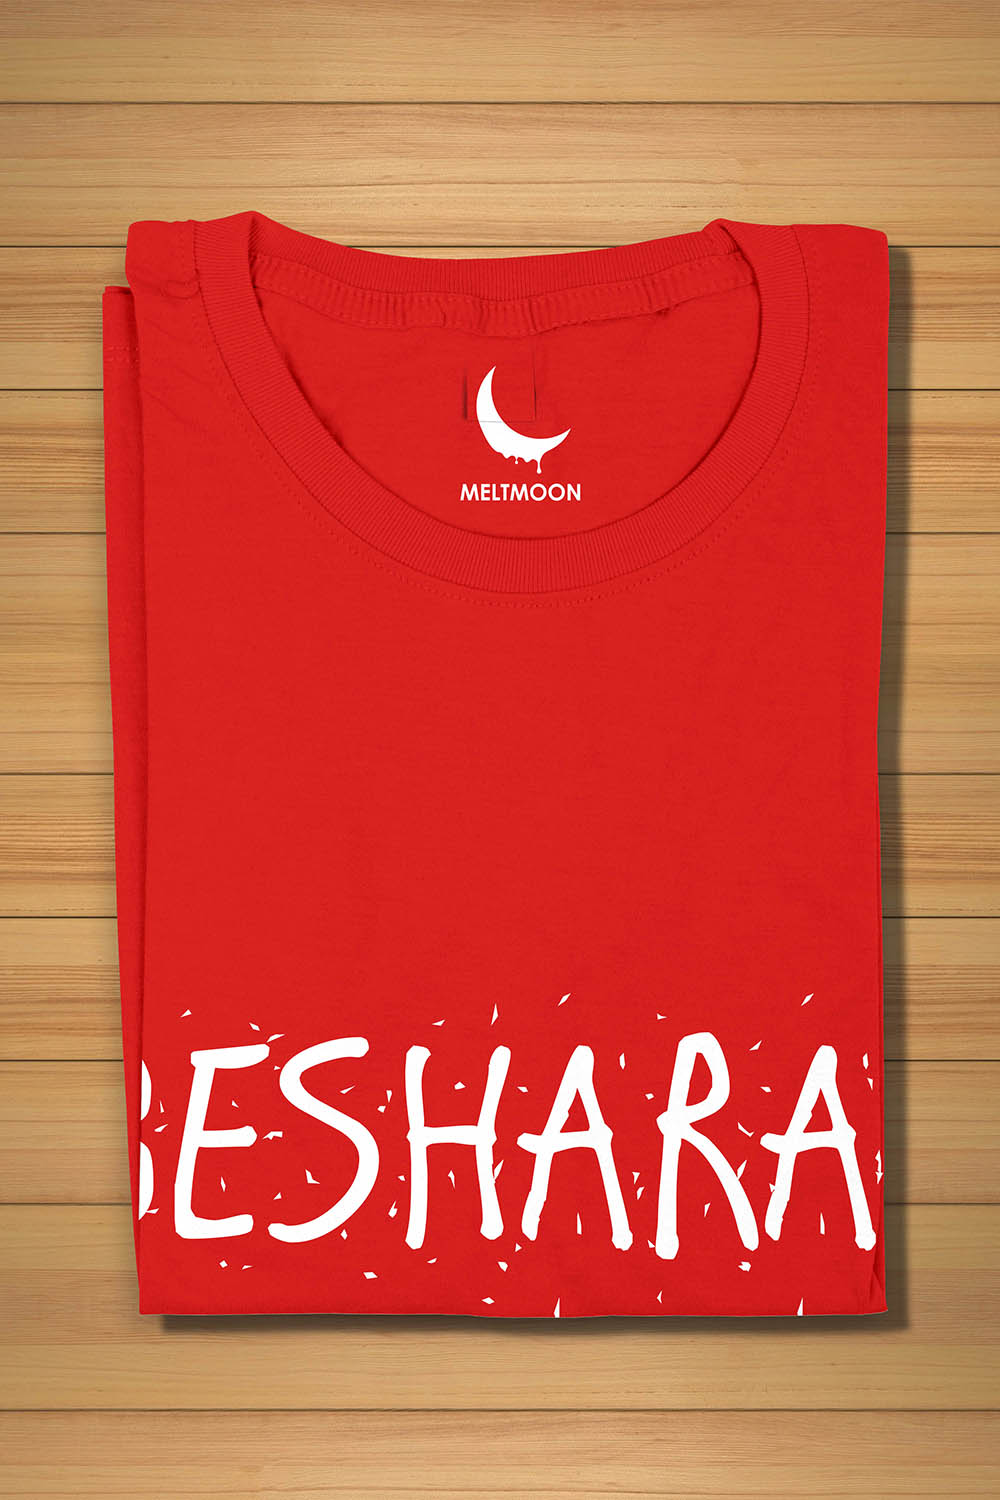 Besharam T-shirt for Men & Women Navy Blye